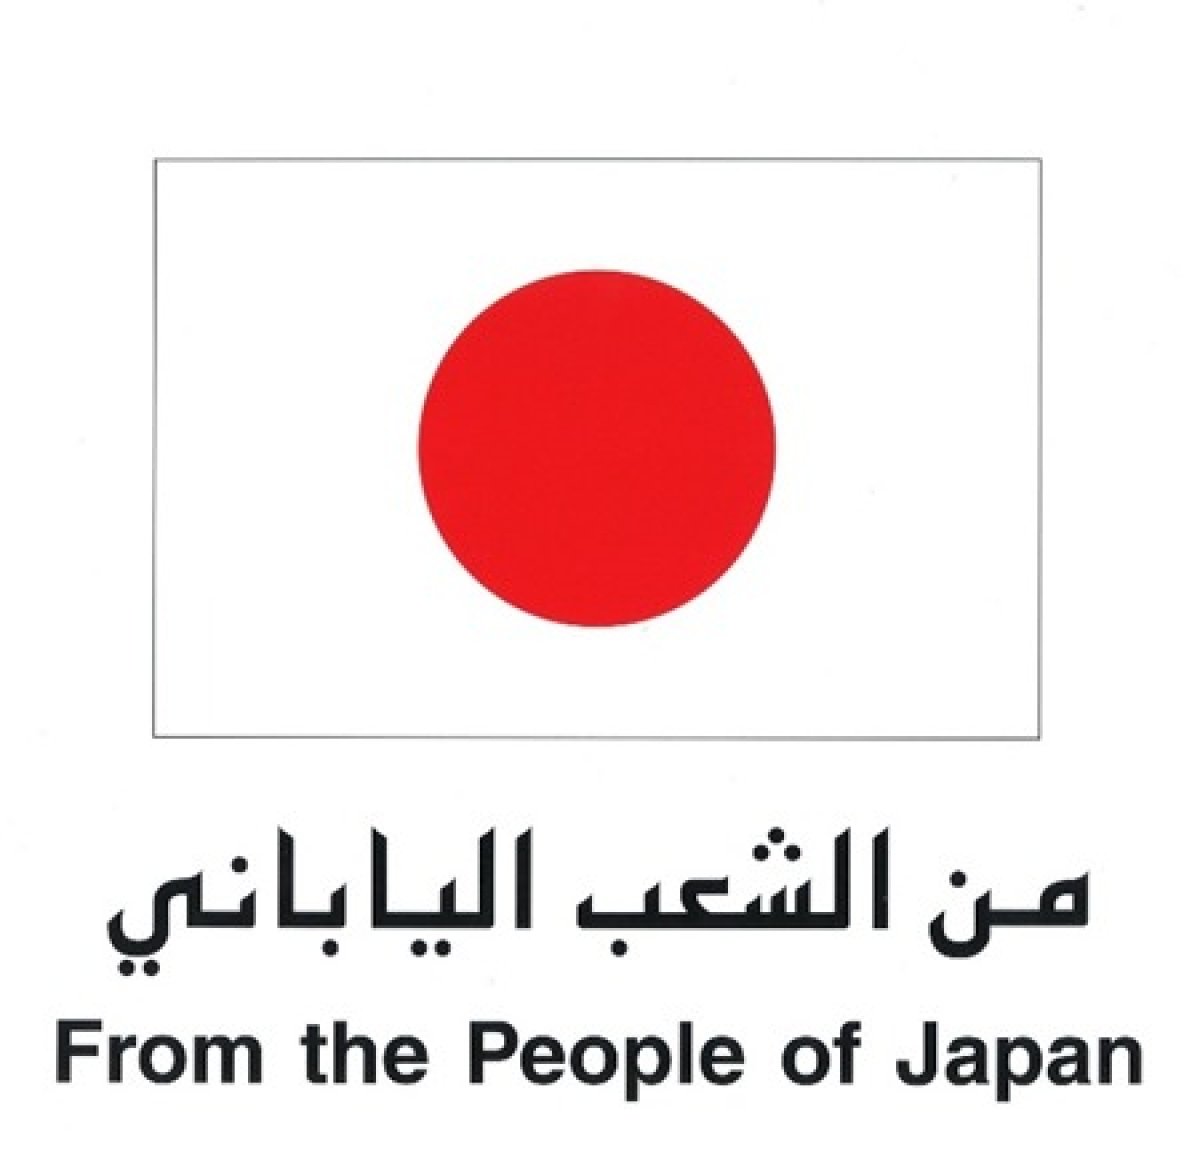 "دعم الميل الأخير" من اليابان لتحسين معدات سلسلة التبريد للمساعدة في التطعيم  لمكافحة فيروس كورونا المستجد في مصر